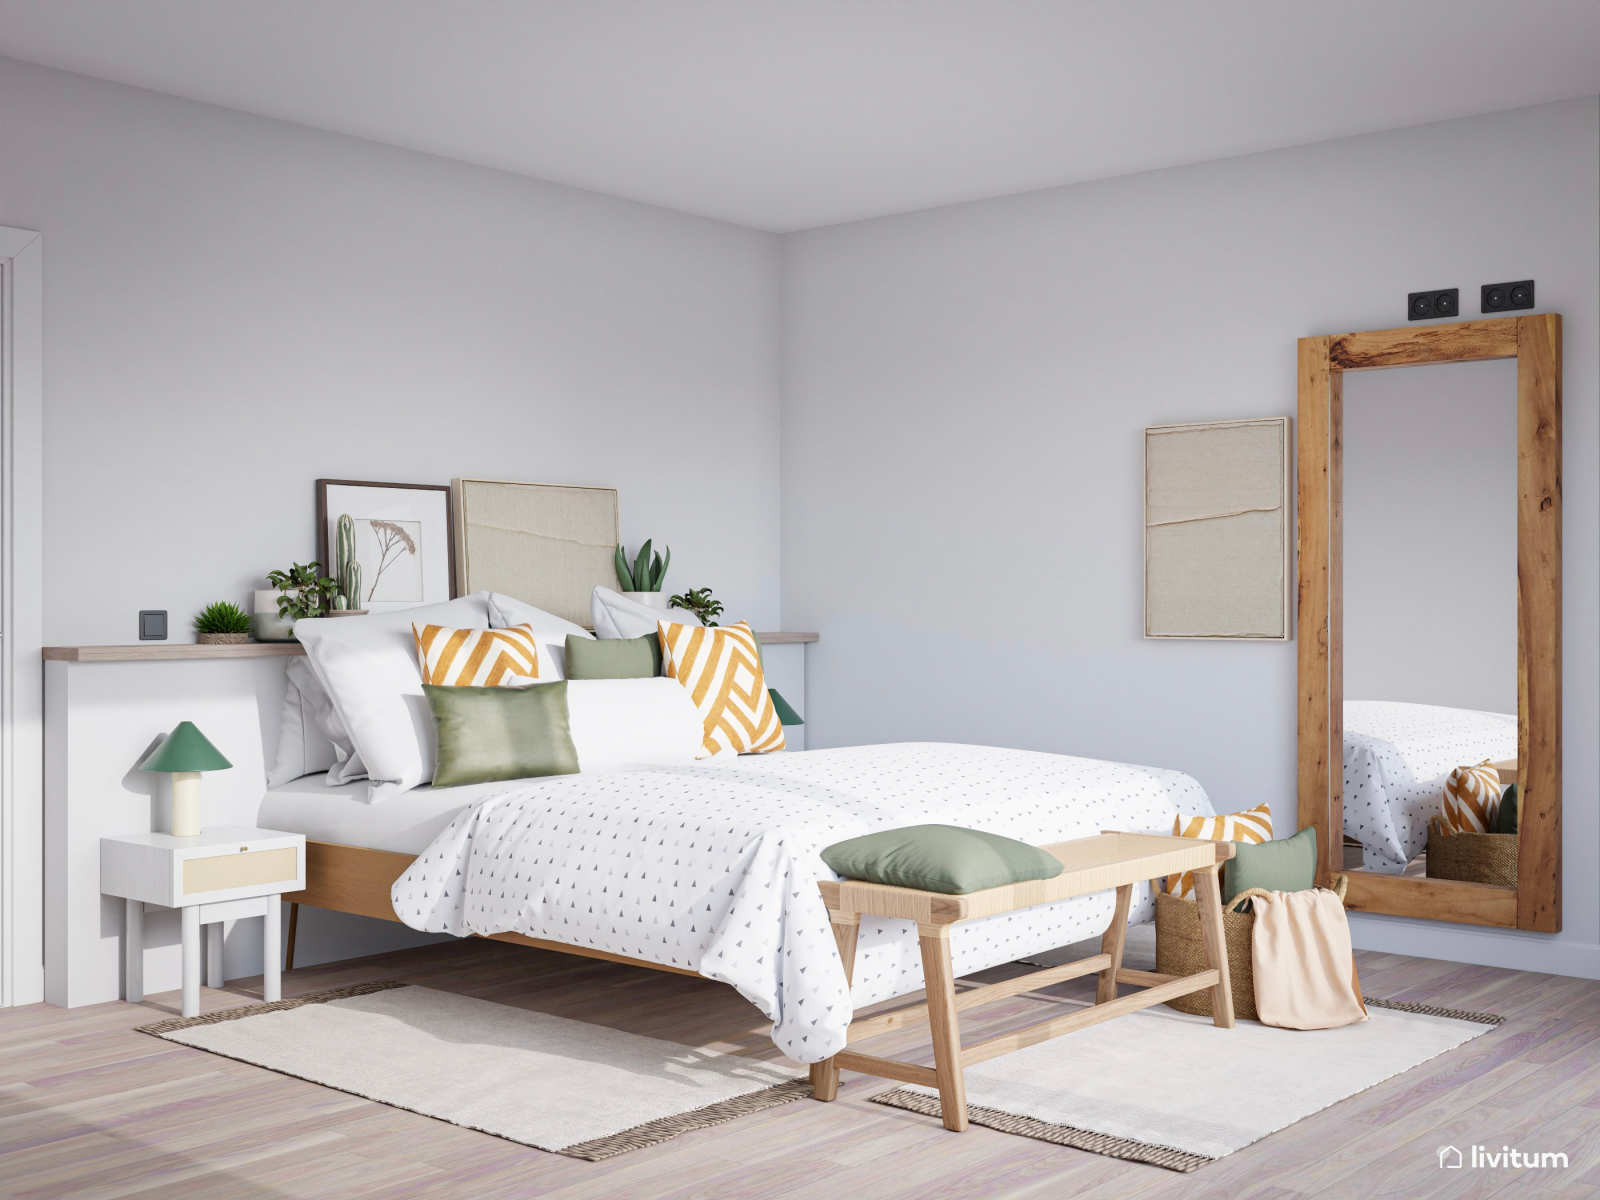 Dormitorio en tonos neutros, ocres y verde con vestidor